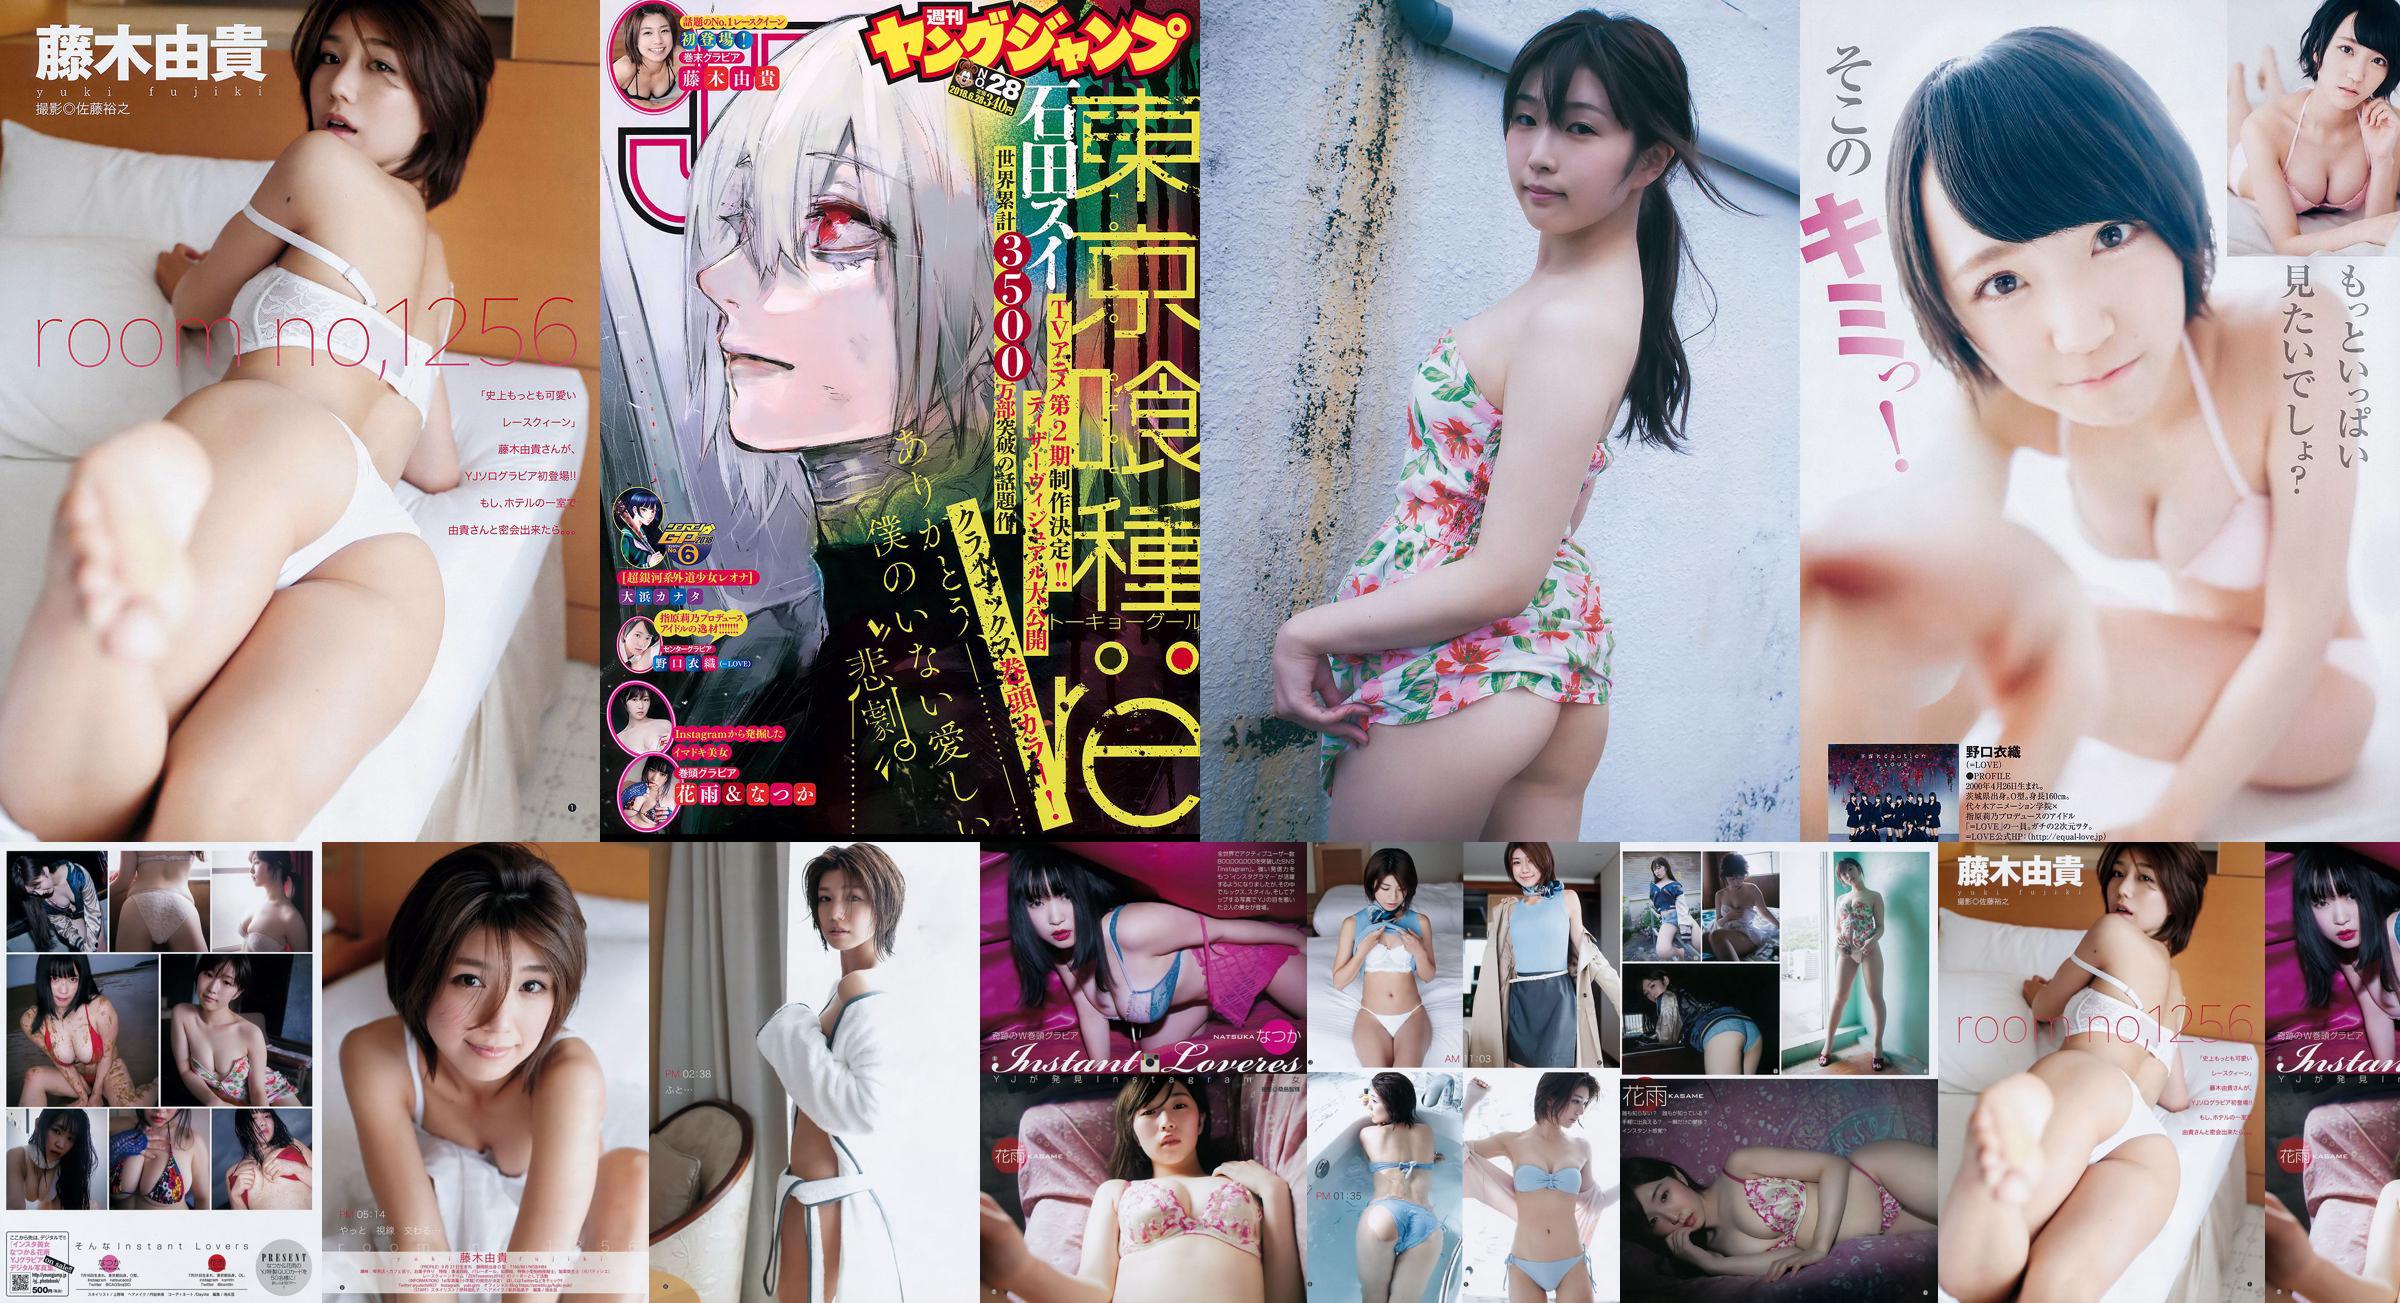 Nozuka Hanayu Noguchi Yiori Fujiki Yuki [Wekelijkse Young Jump] 2018 nr. 28 Photo Magazine No.7c5897 Pagina 2